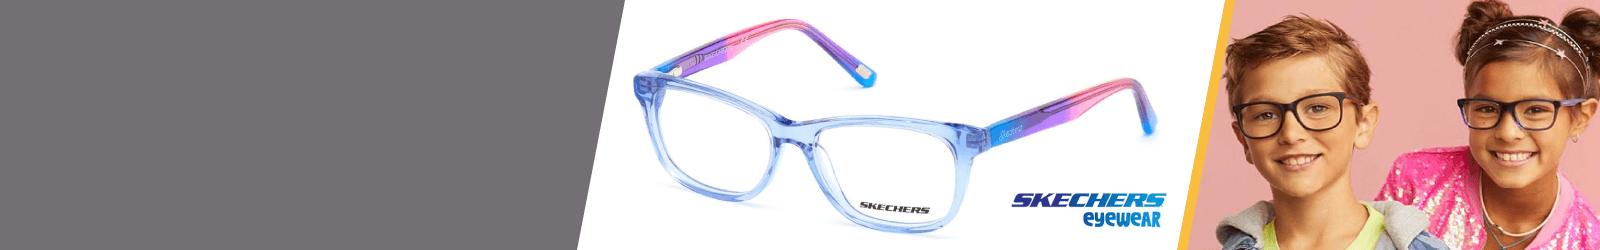 Glitter Skechers  Eyewear for Kids